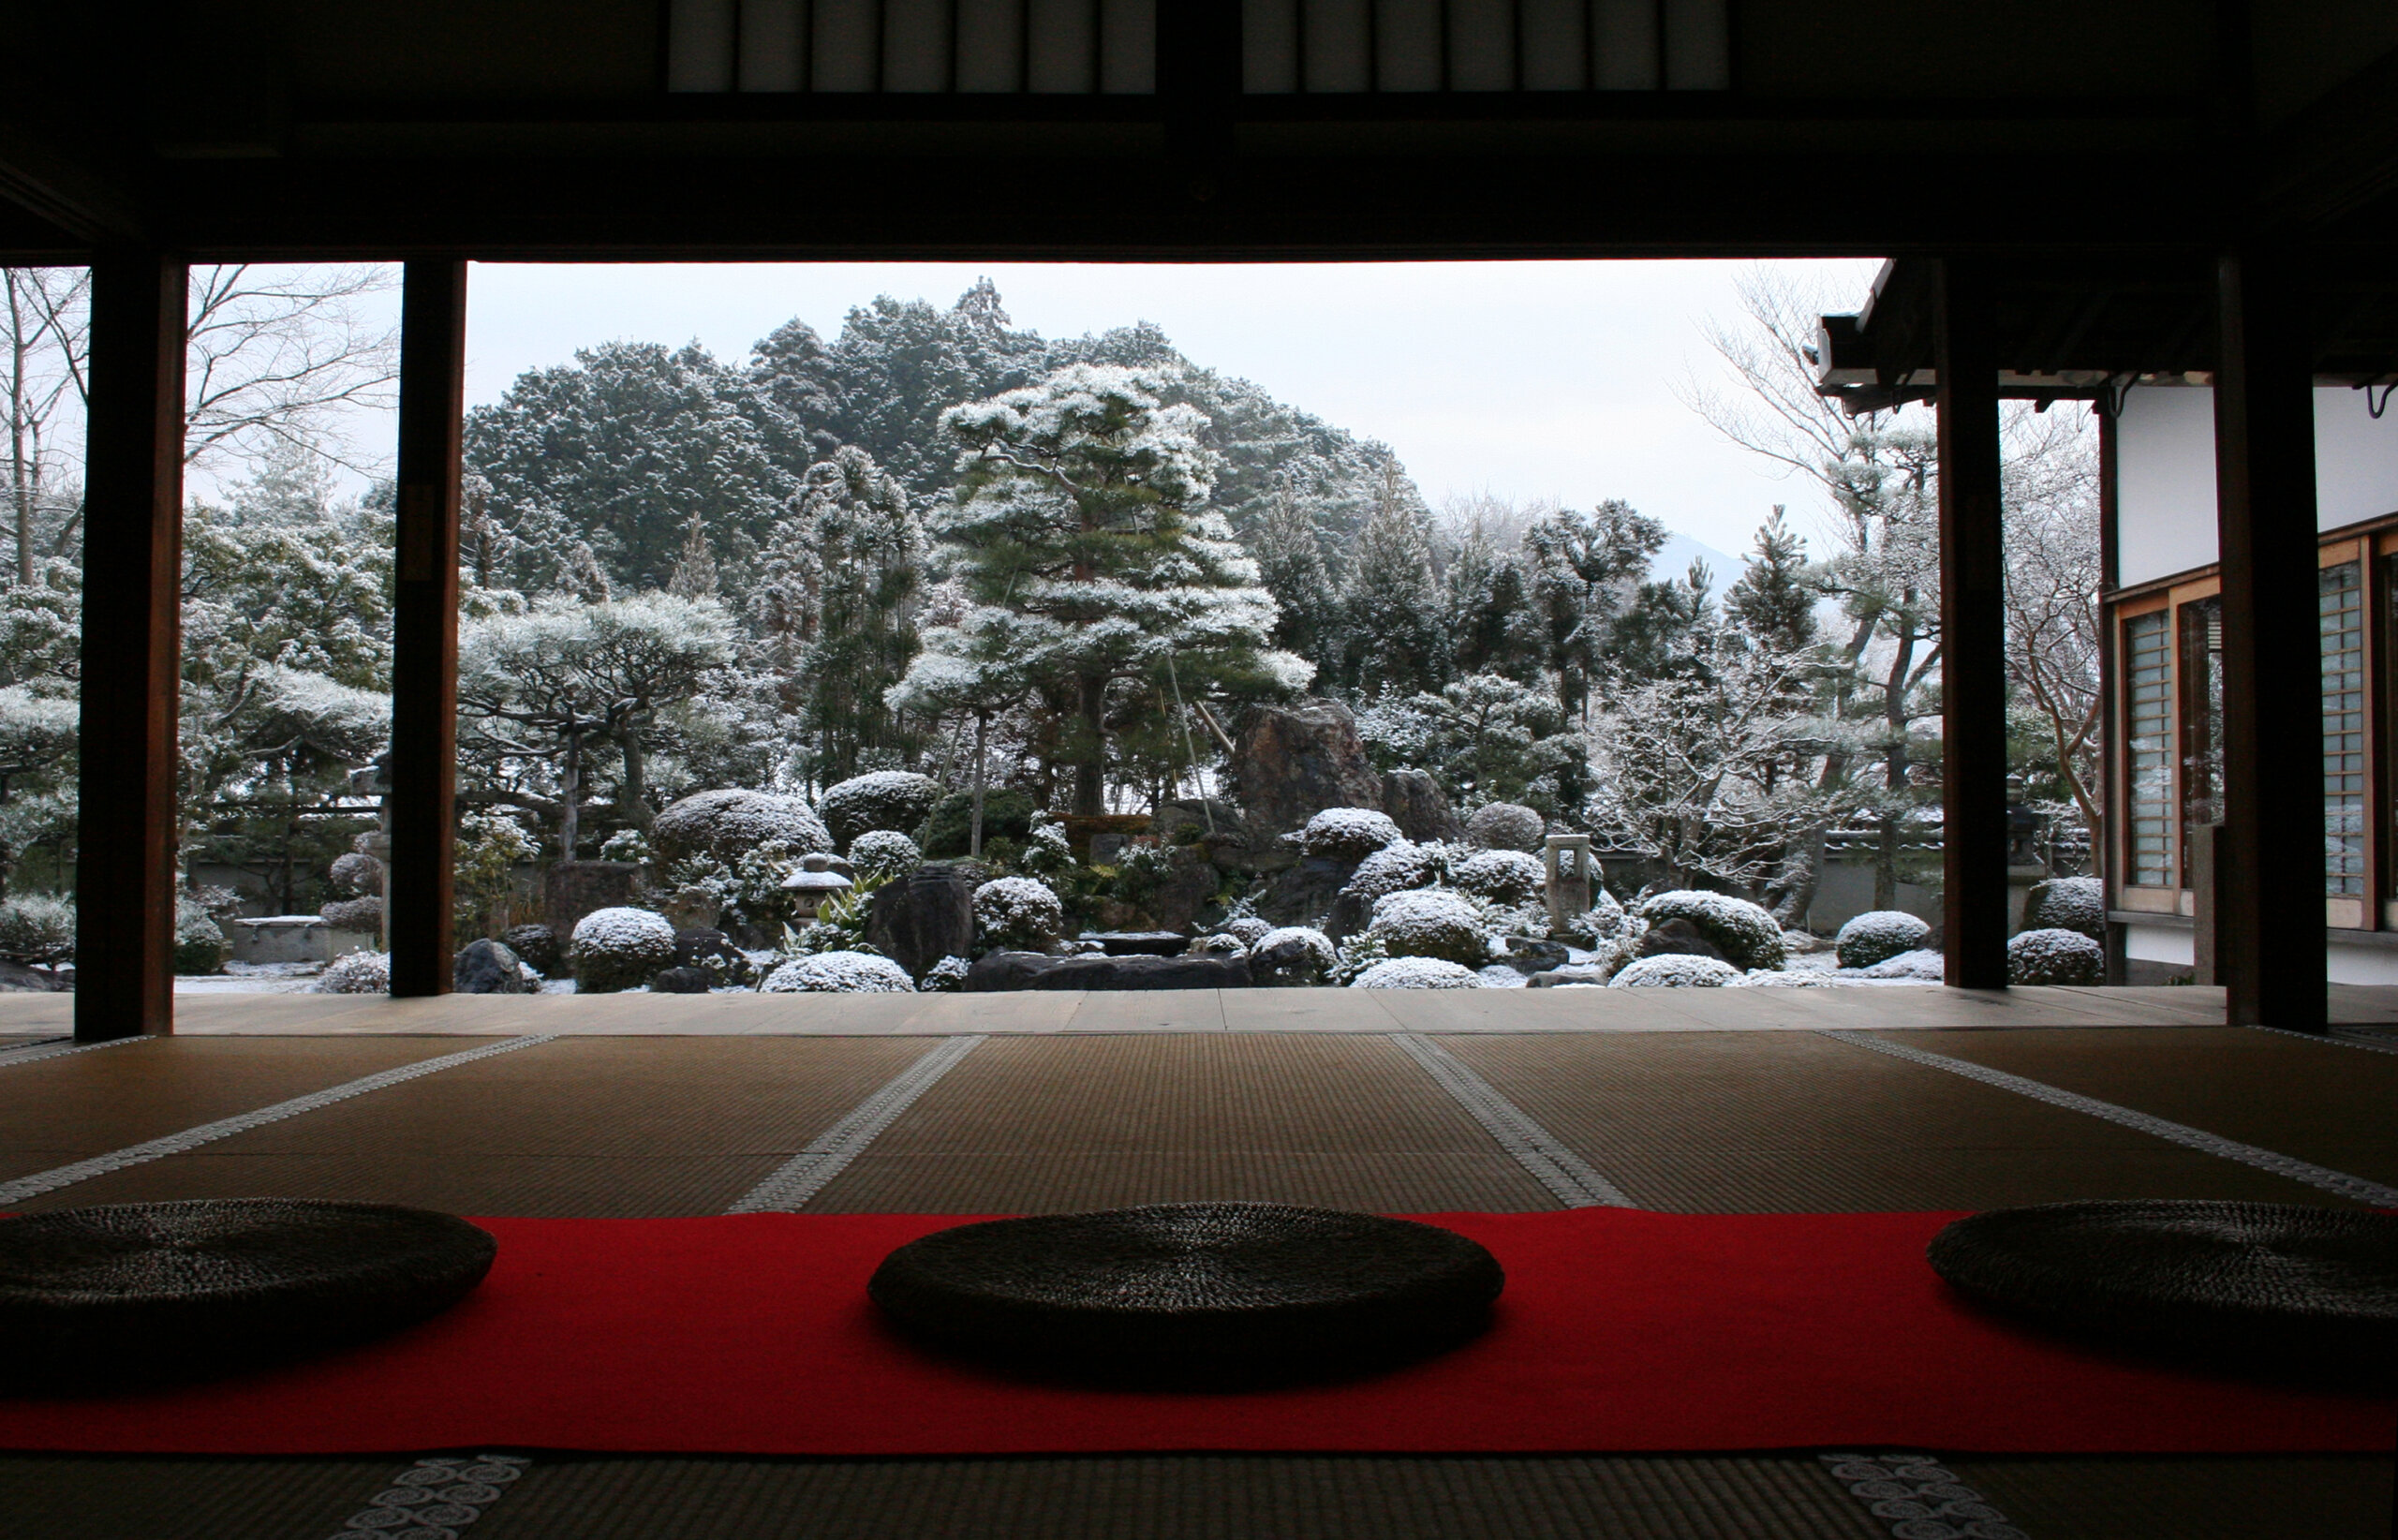 京都市の北に位置し、市内より気温も低い岩倉の地。雪化粧で陰翳をつけた「雪の庭」の静謐さは圧巻だ。庭に雪がない時でも、冠雪の比叡山のから流れる水脈を感じさせる枯滝が美しい